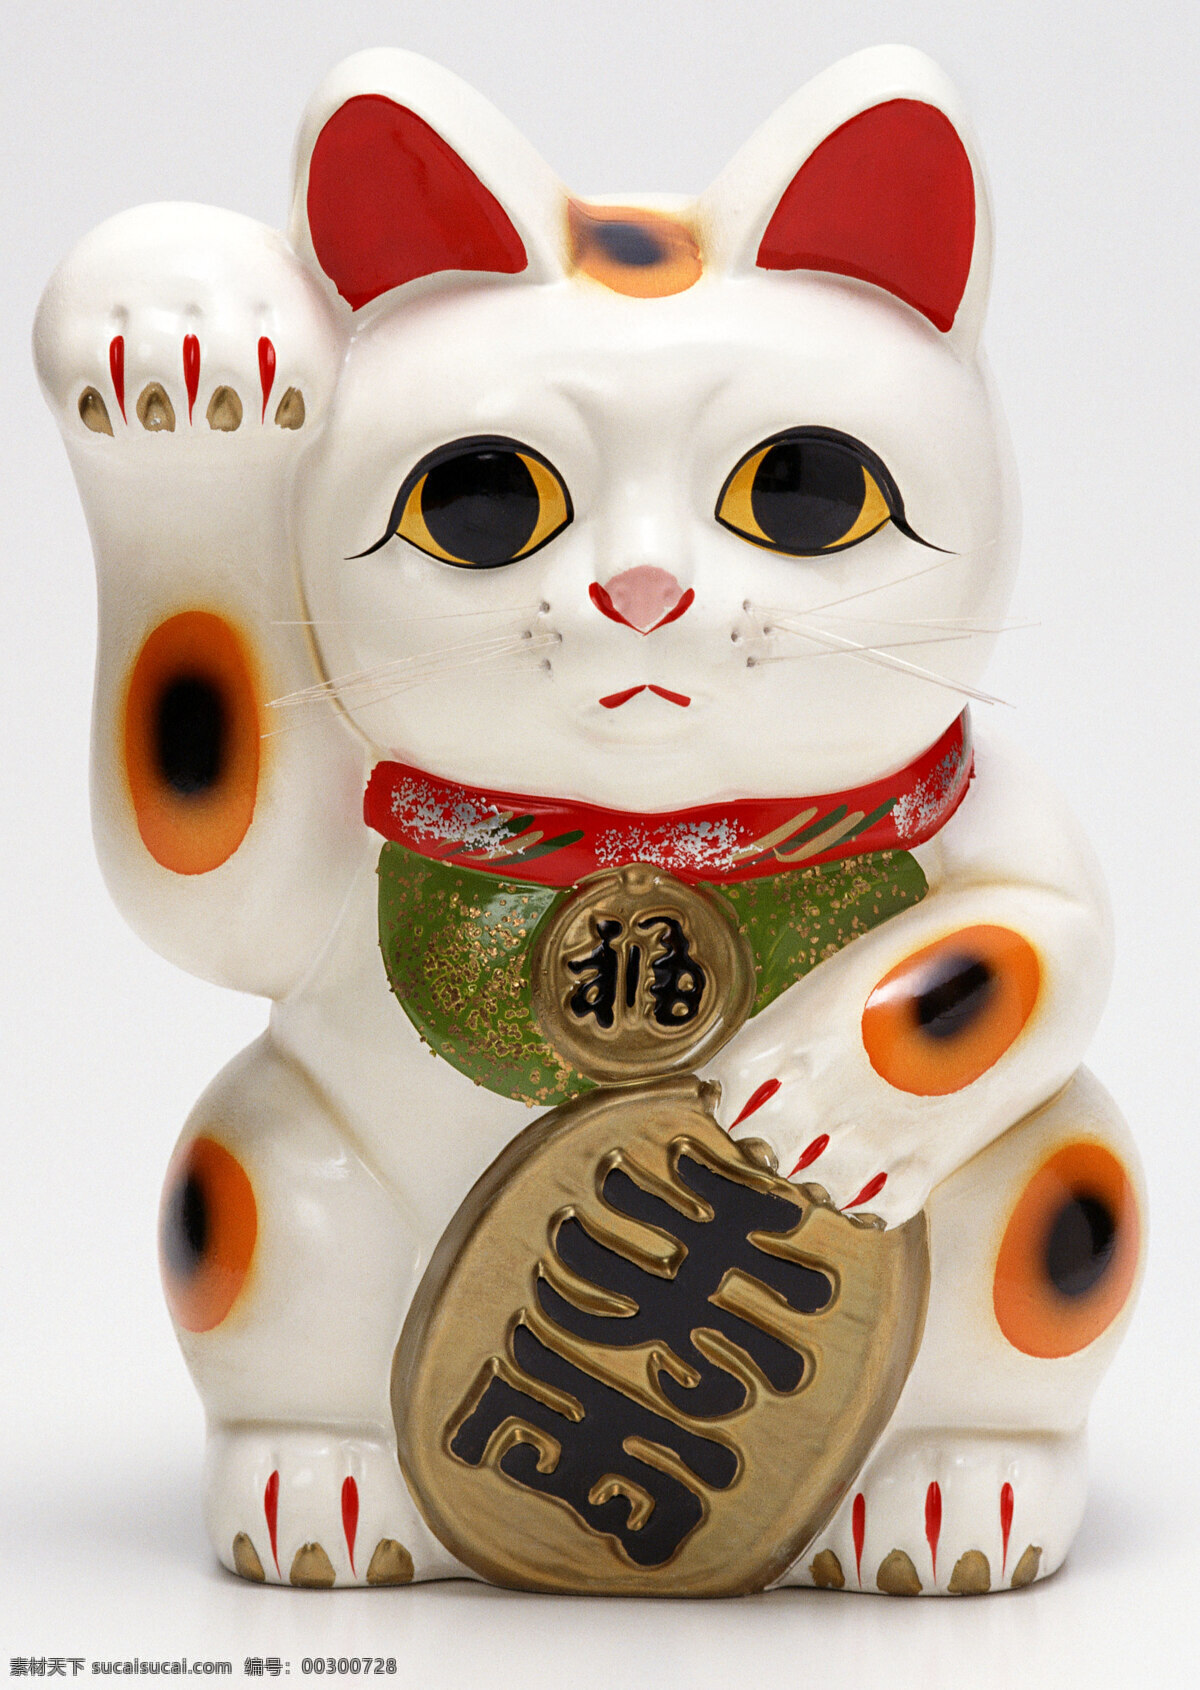 日本 元素 招财猫 猫 节日 艺术专题 文化艺术 宗教信仰